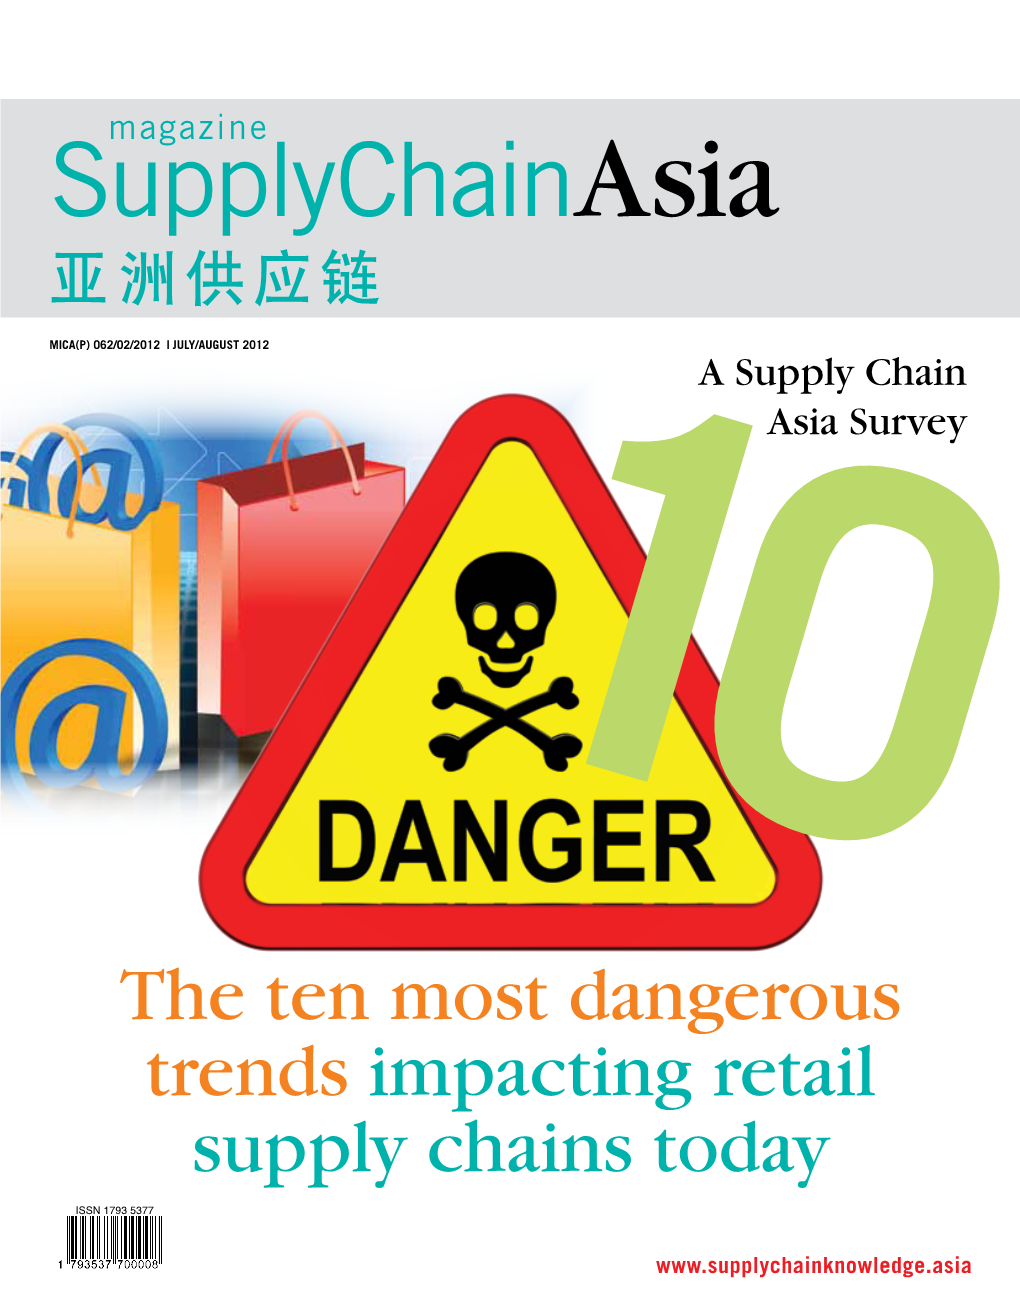 Magazine Supplychainasia 亚洲供应链